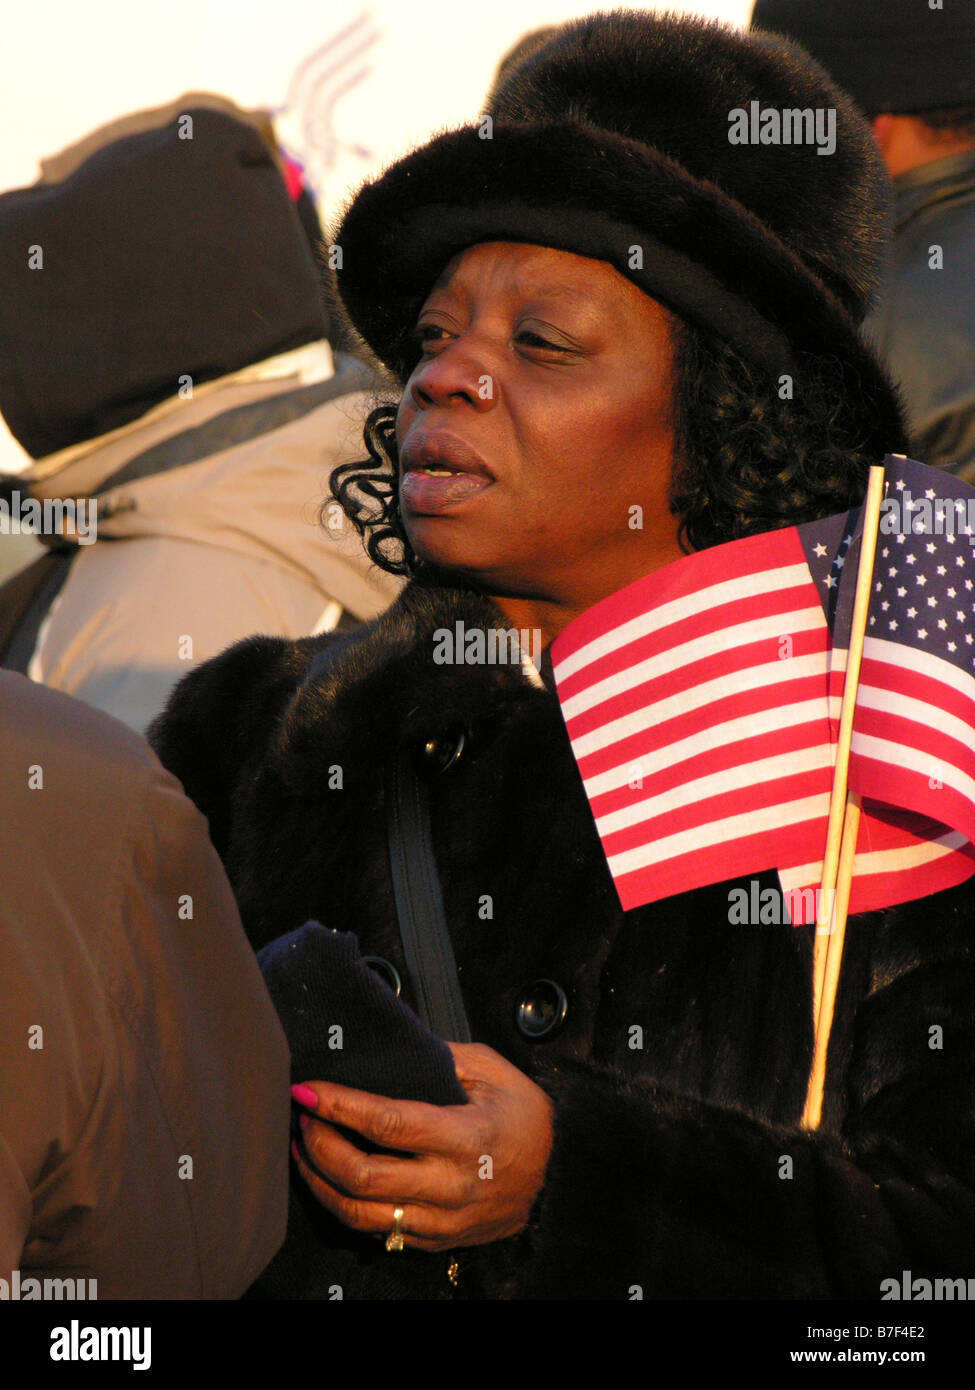 Afro-amerikanische Frau hält amerikanische Flaggen als She-Stämme für eine Ansicht unter der Menge an Barack Obamas Amtseinführung. Stockfoto